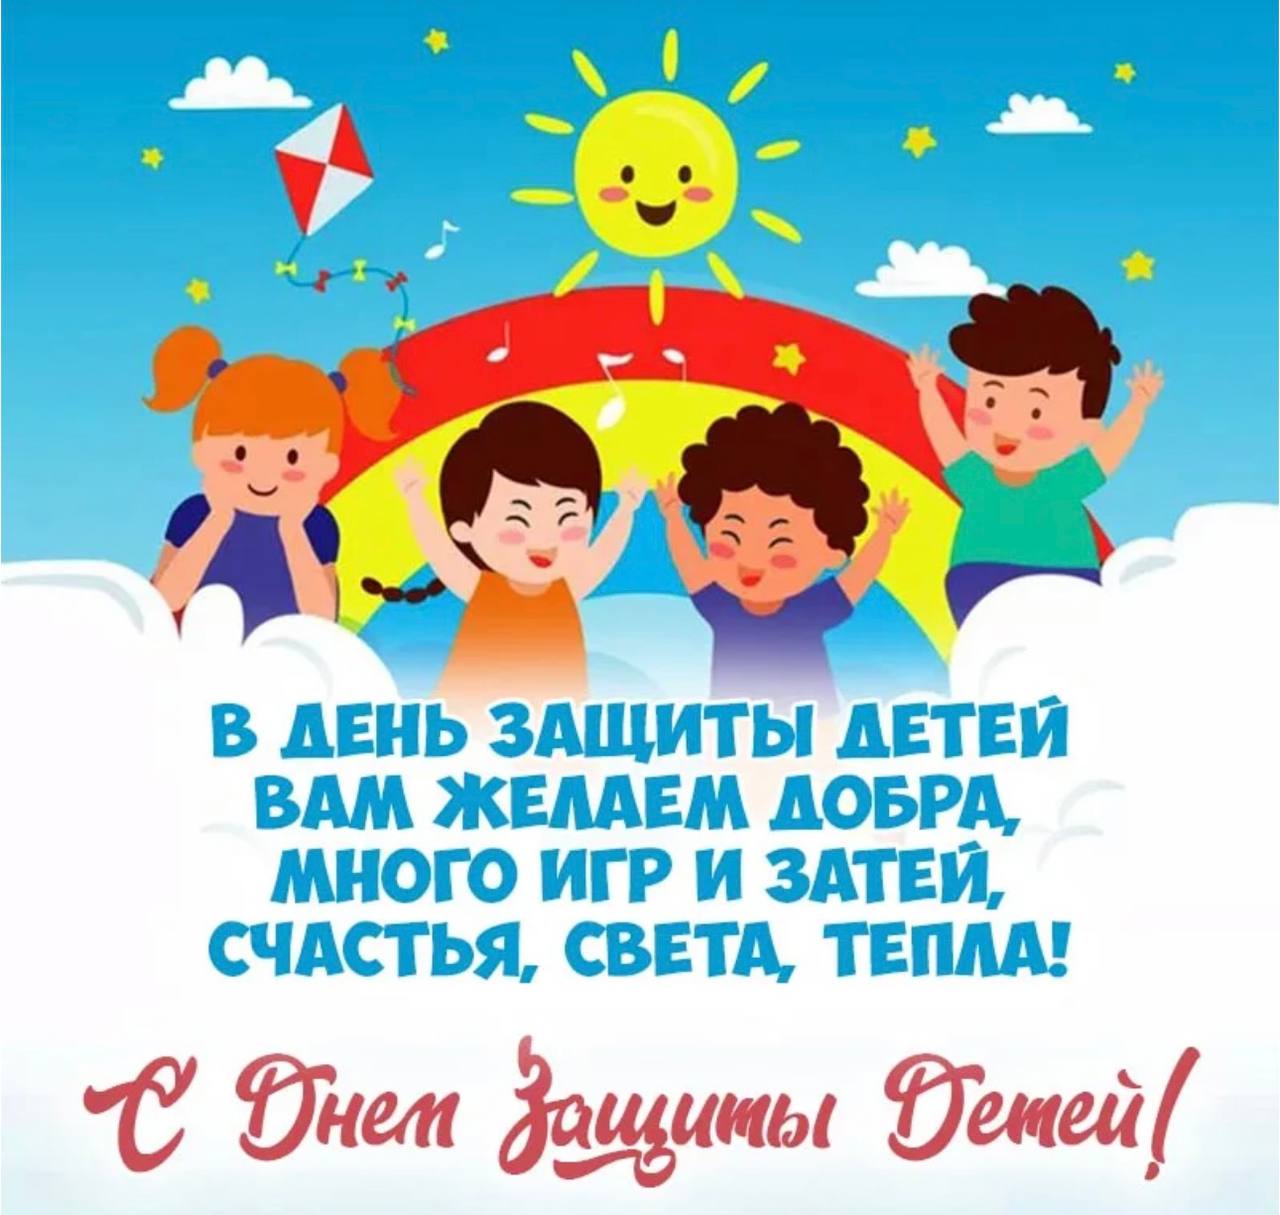 Сегодня 1 июня. С днем зазитщиты детей. С днем защиты детей поздравление. 1 Июня день защиты детей. С мнждународный днём защиты детей.